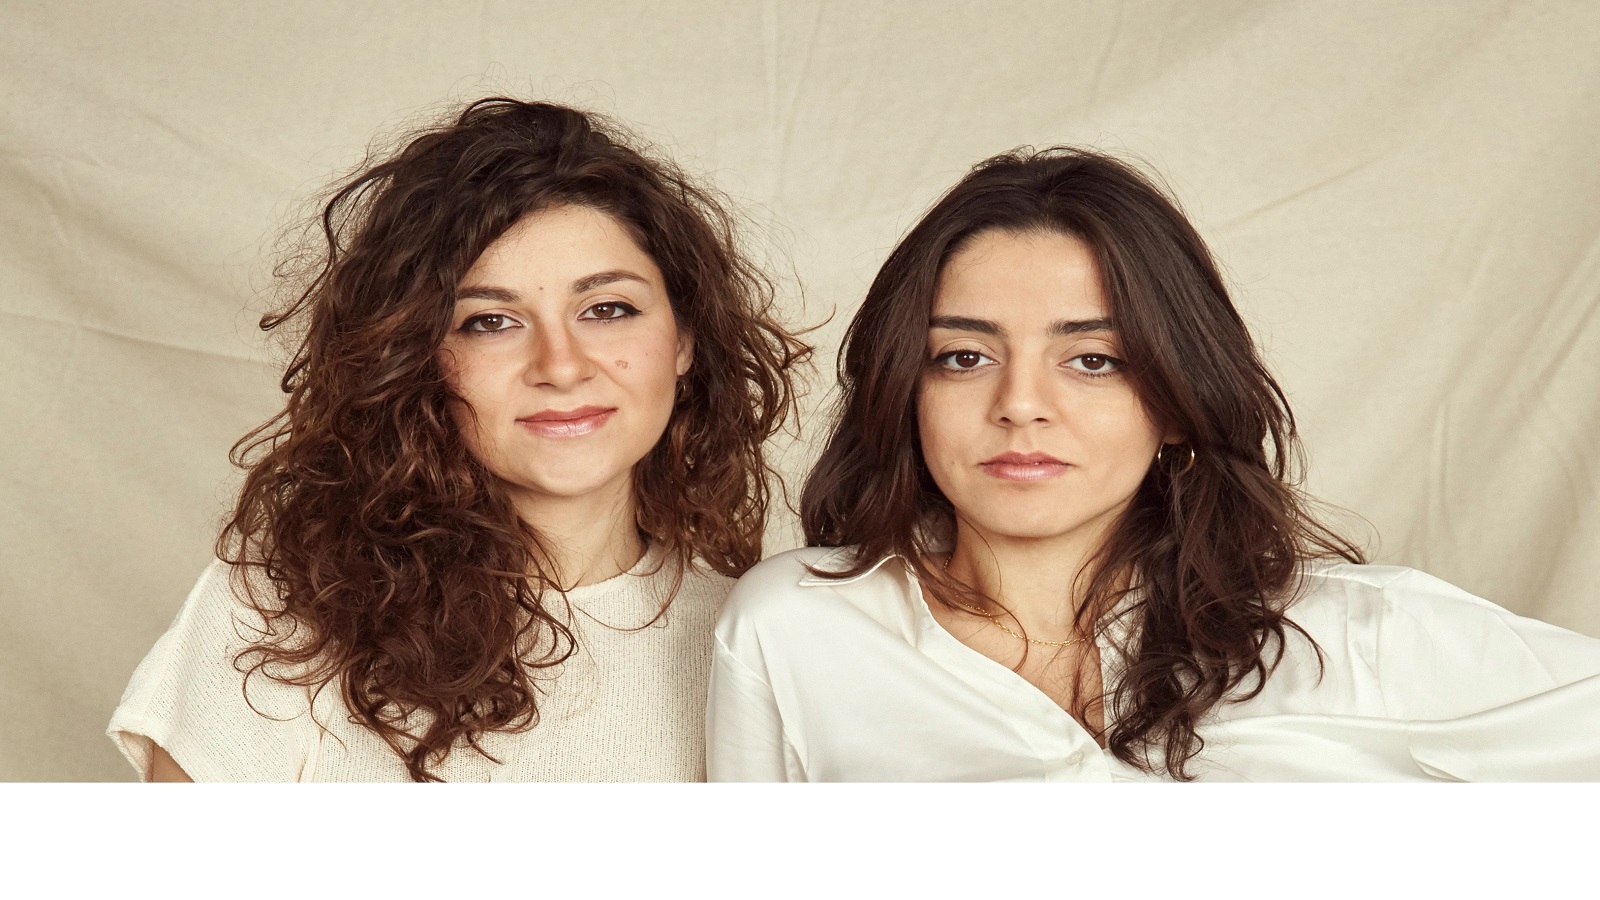 شقيقتان لبنانيتان تفوزان بـ"الدبّ الذهبي"...لأفضل فيلم قصير في "برلين"